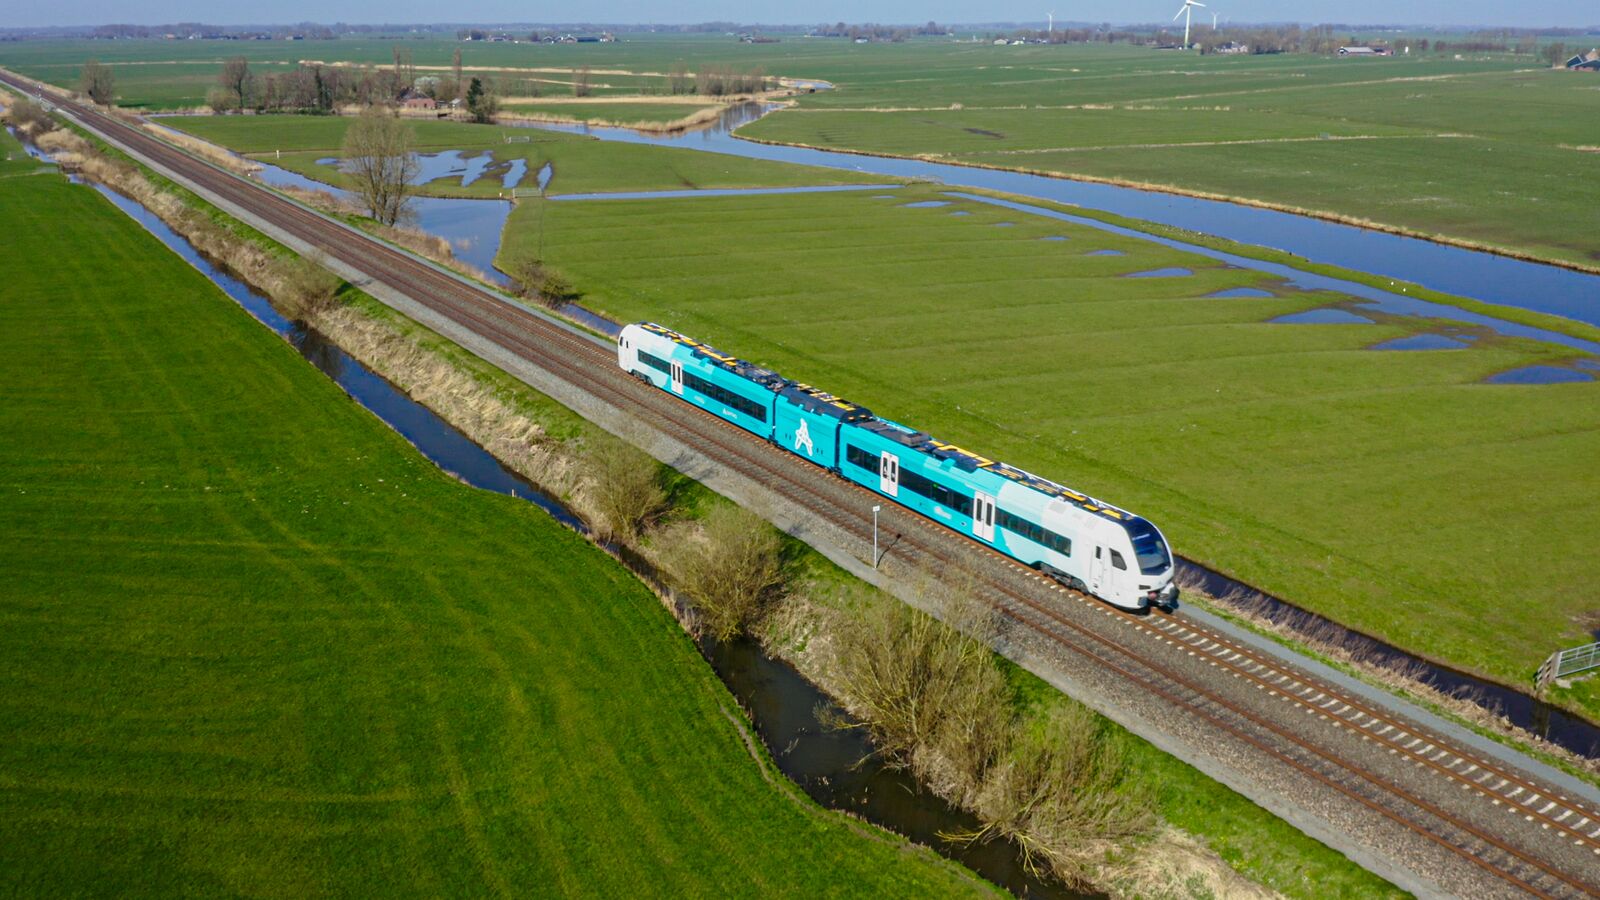 Blauwe trein van Arriva vanuit de lucht gezien terwijl hij in een groen weidelandschap rijdt.